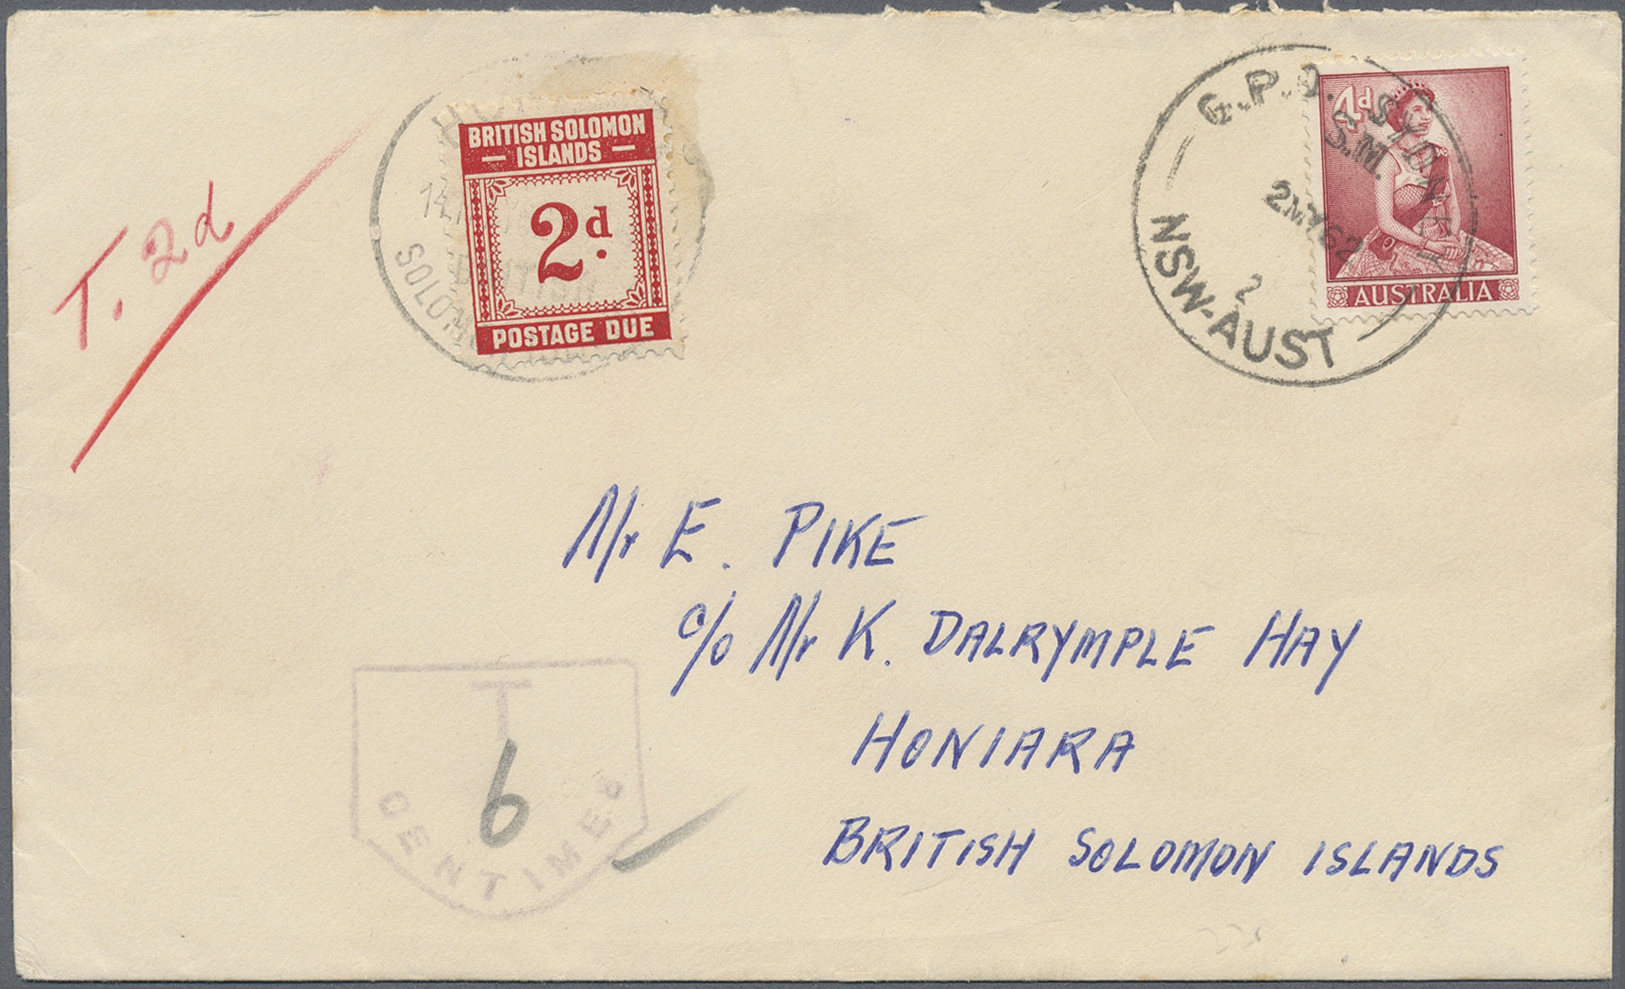 Br Britische Salomoninseln - Portomarken: 1962. Envelope Addressed To The British Solomon Islands Bearing Australia SG 3 - British Solomon Islands (...-1978)